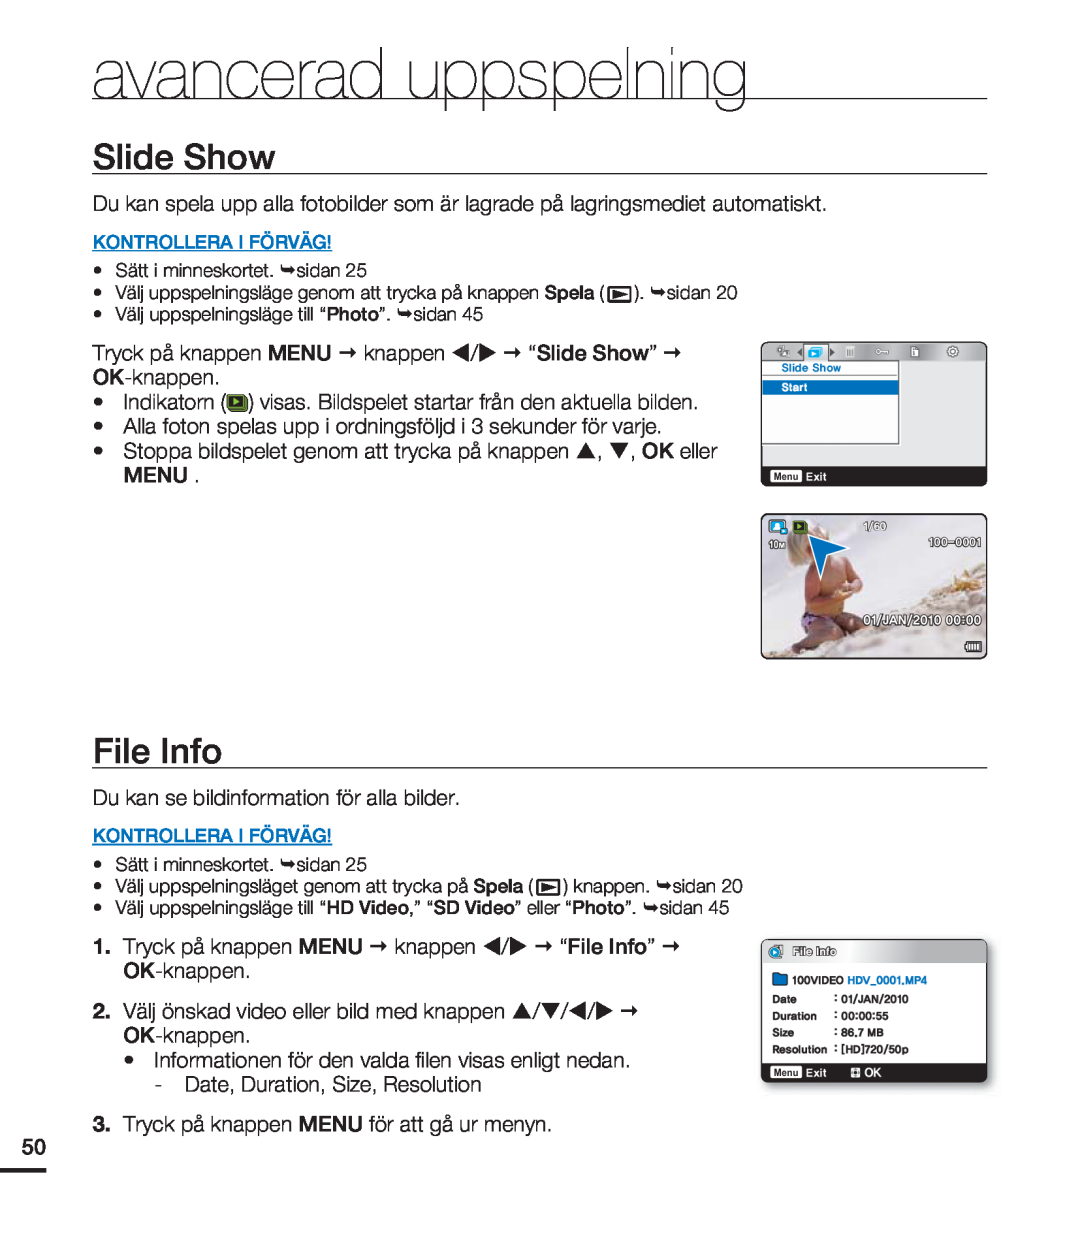 Samsung HMX-U20BP/EDC manual Slide Show, File Info, avancerad uppspelning, Vsbujpo,  .# 